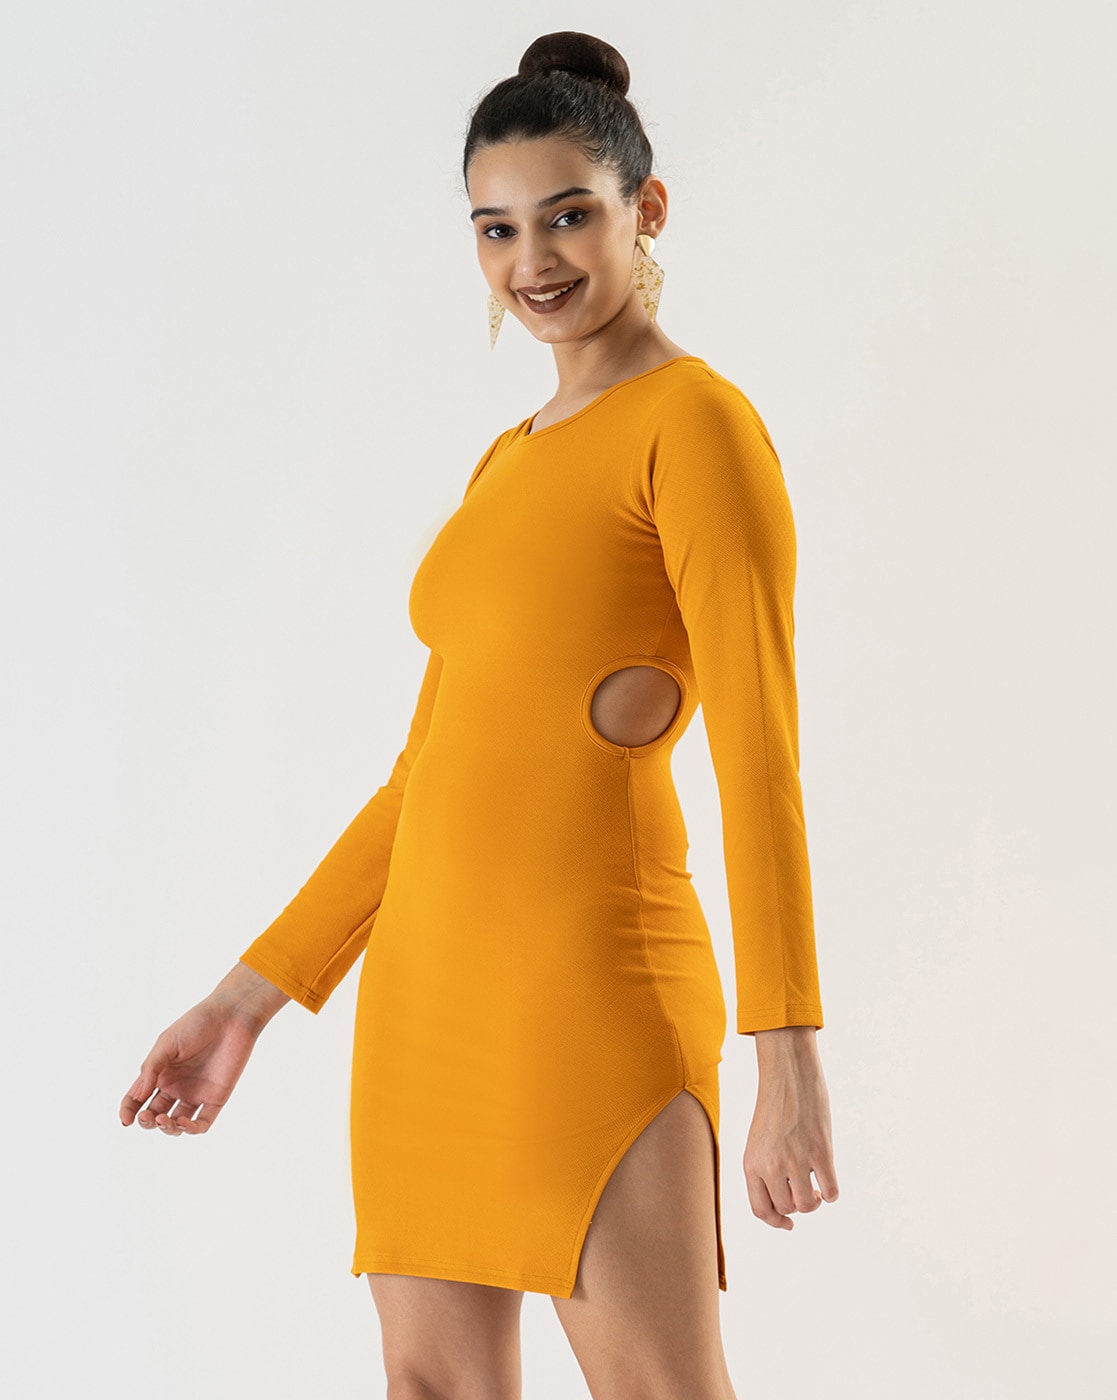 CapsA Women V-Neck Elegant Bodycon Party Dress Slit India | Ubuy